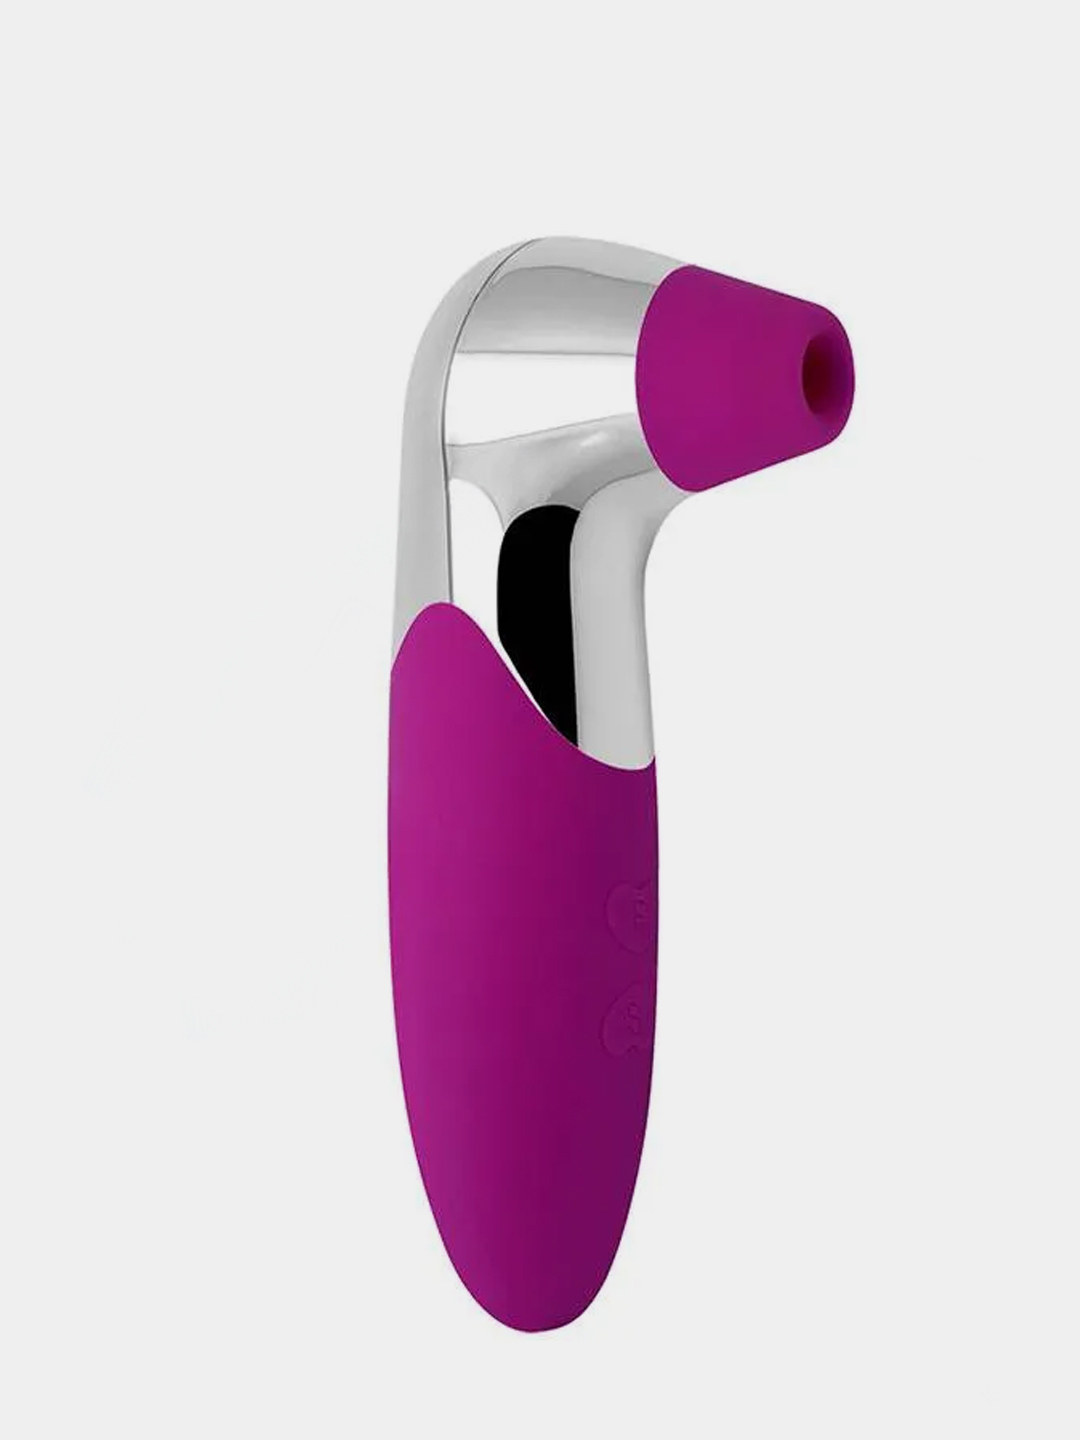 Секс-игрушка для клитора, цвет в ассортименте | AliExpress